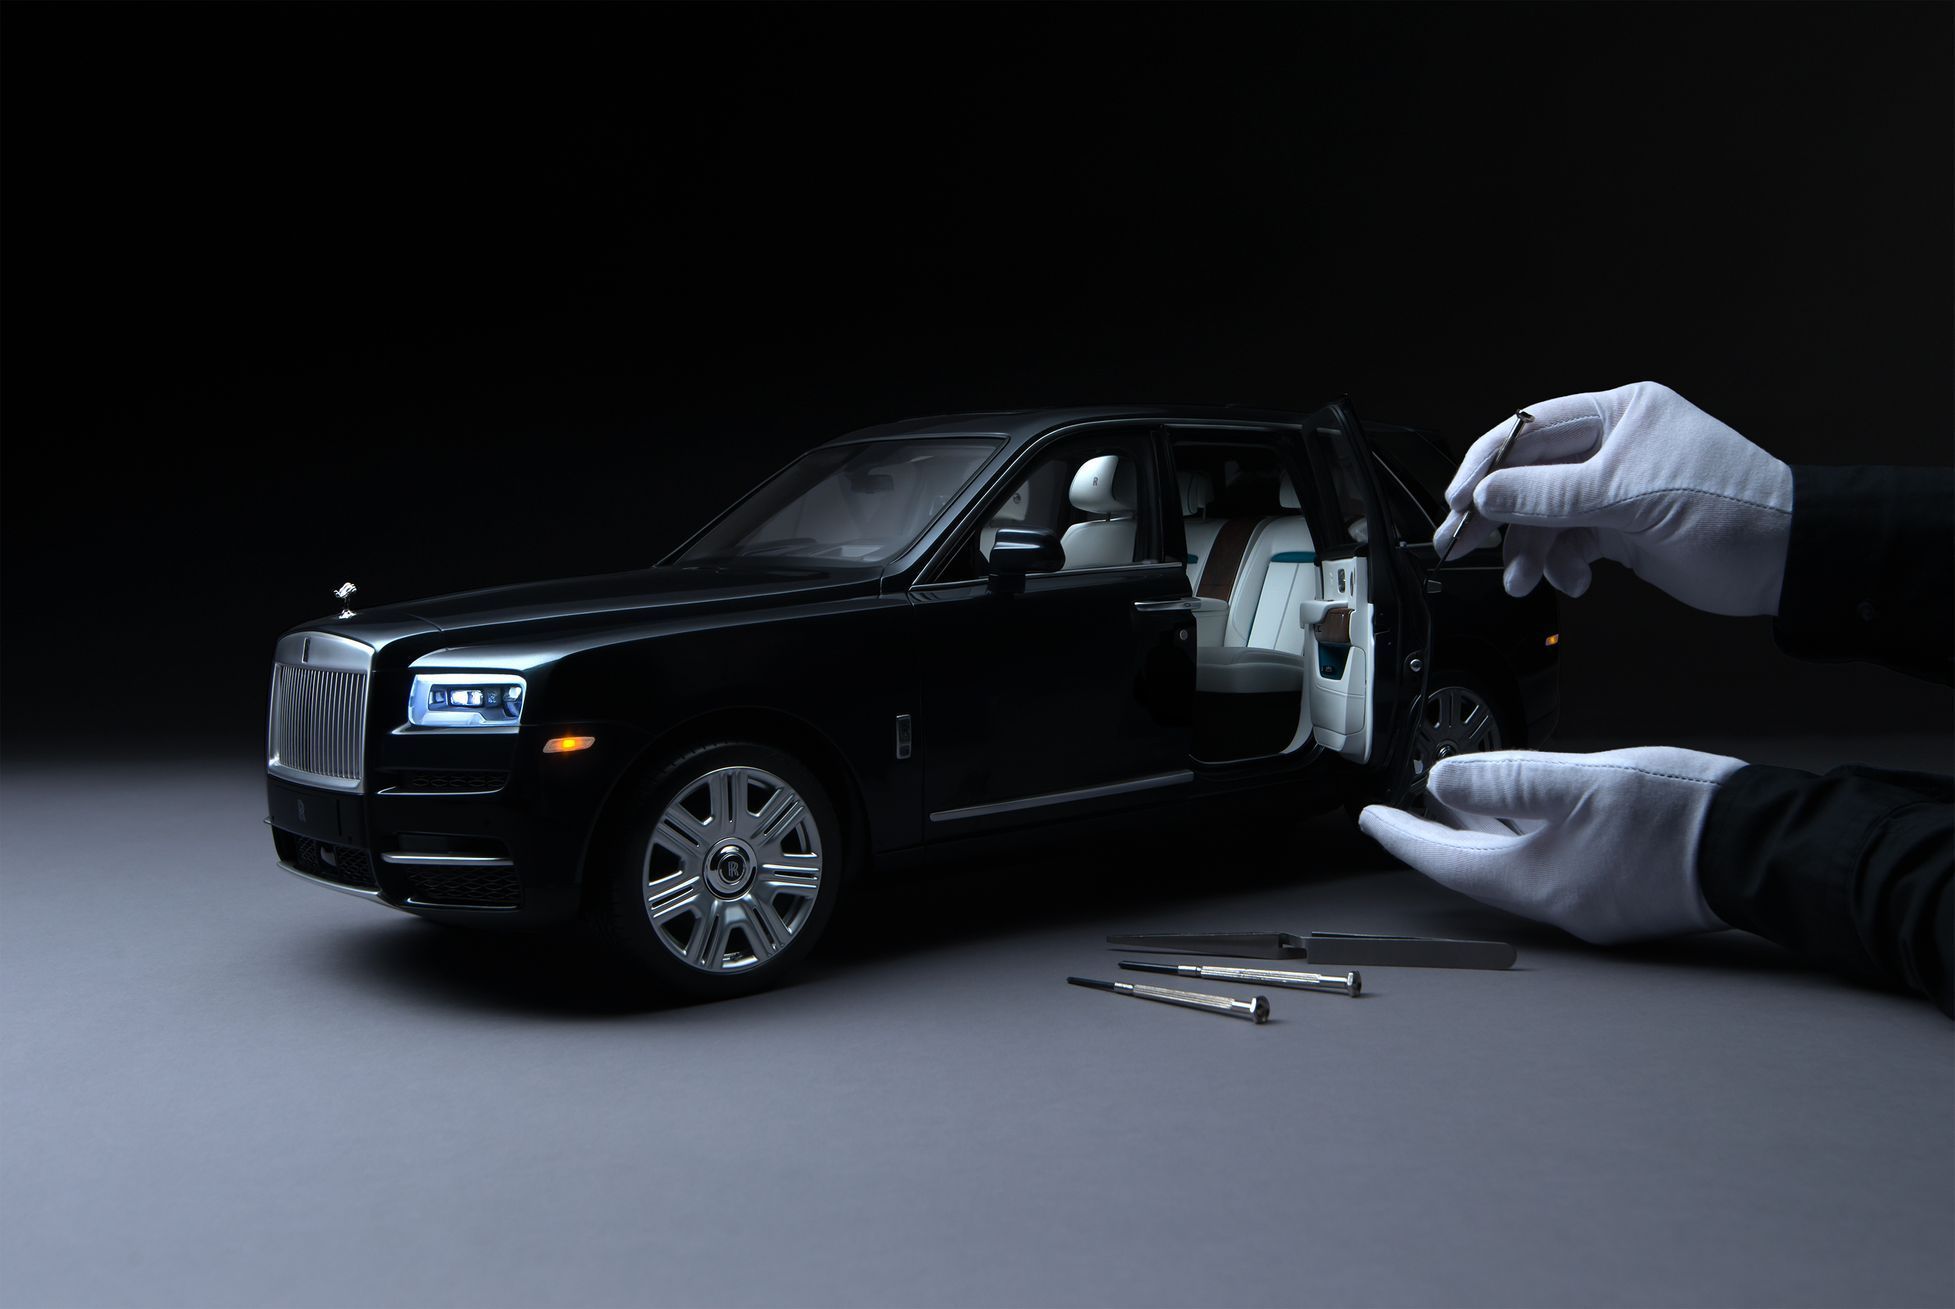 Rolls-Royce Cullinan 1:8 model